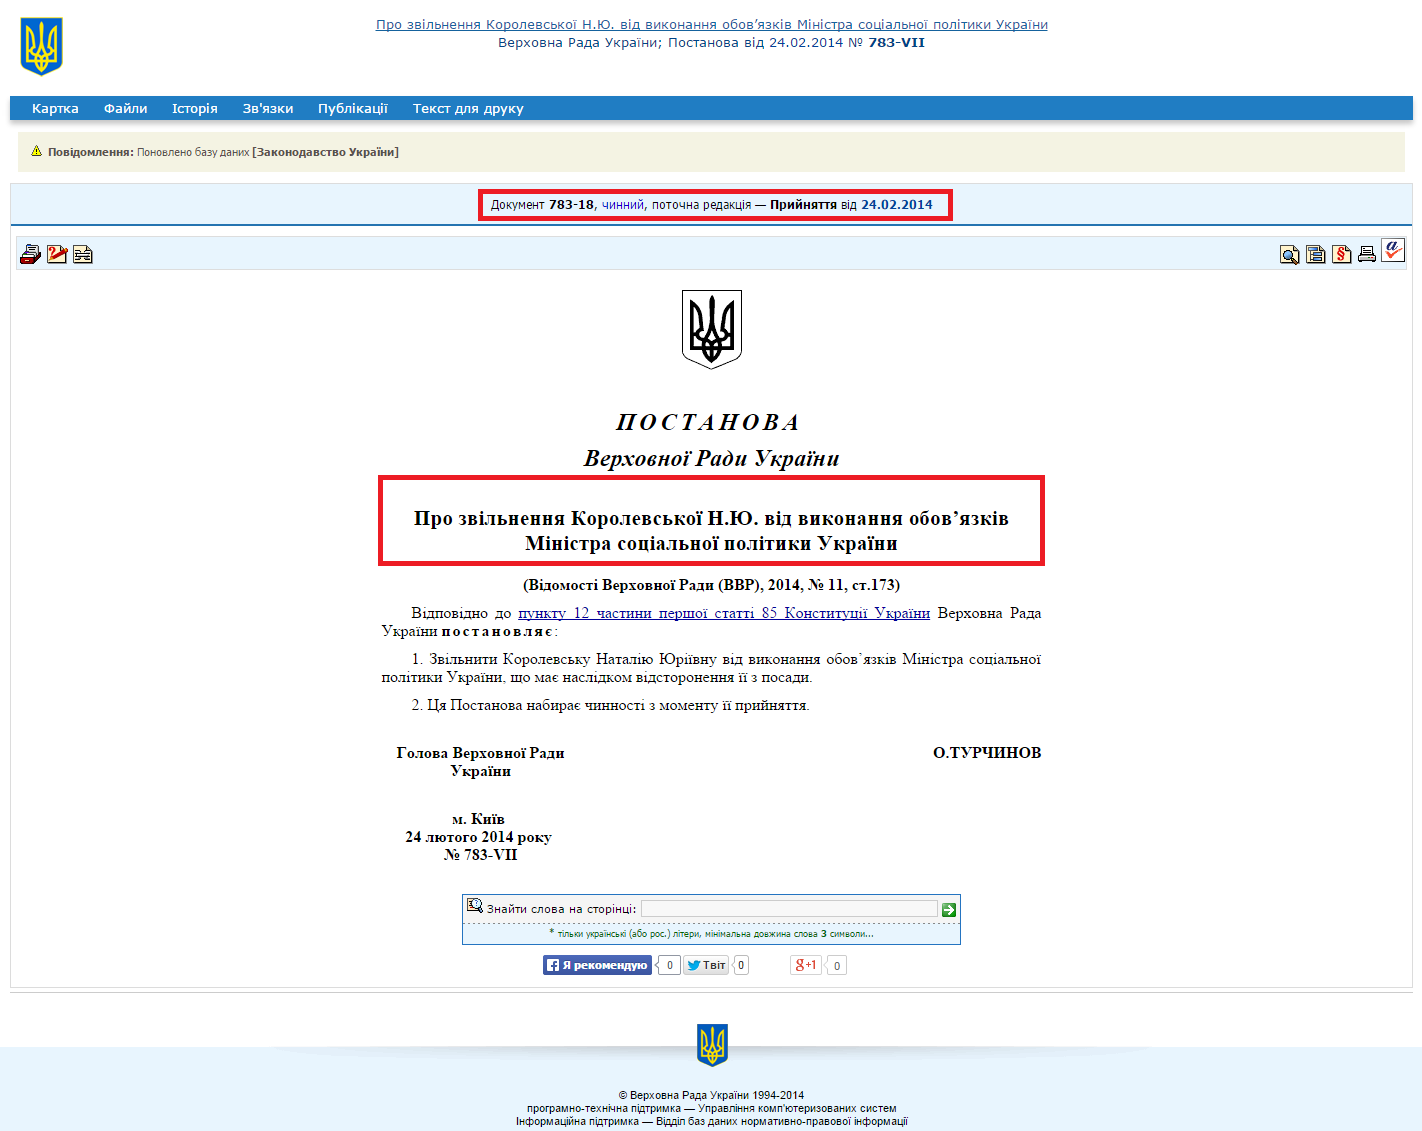 http://zakon2.rada.gov.ua/laws/show/783-18